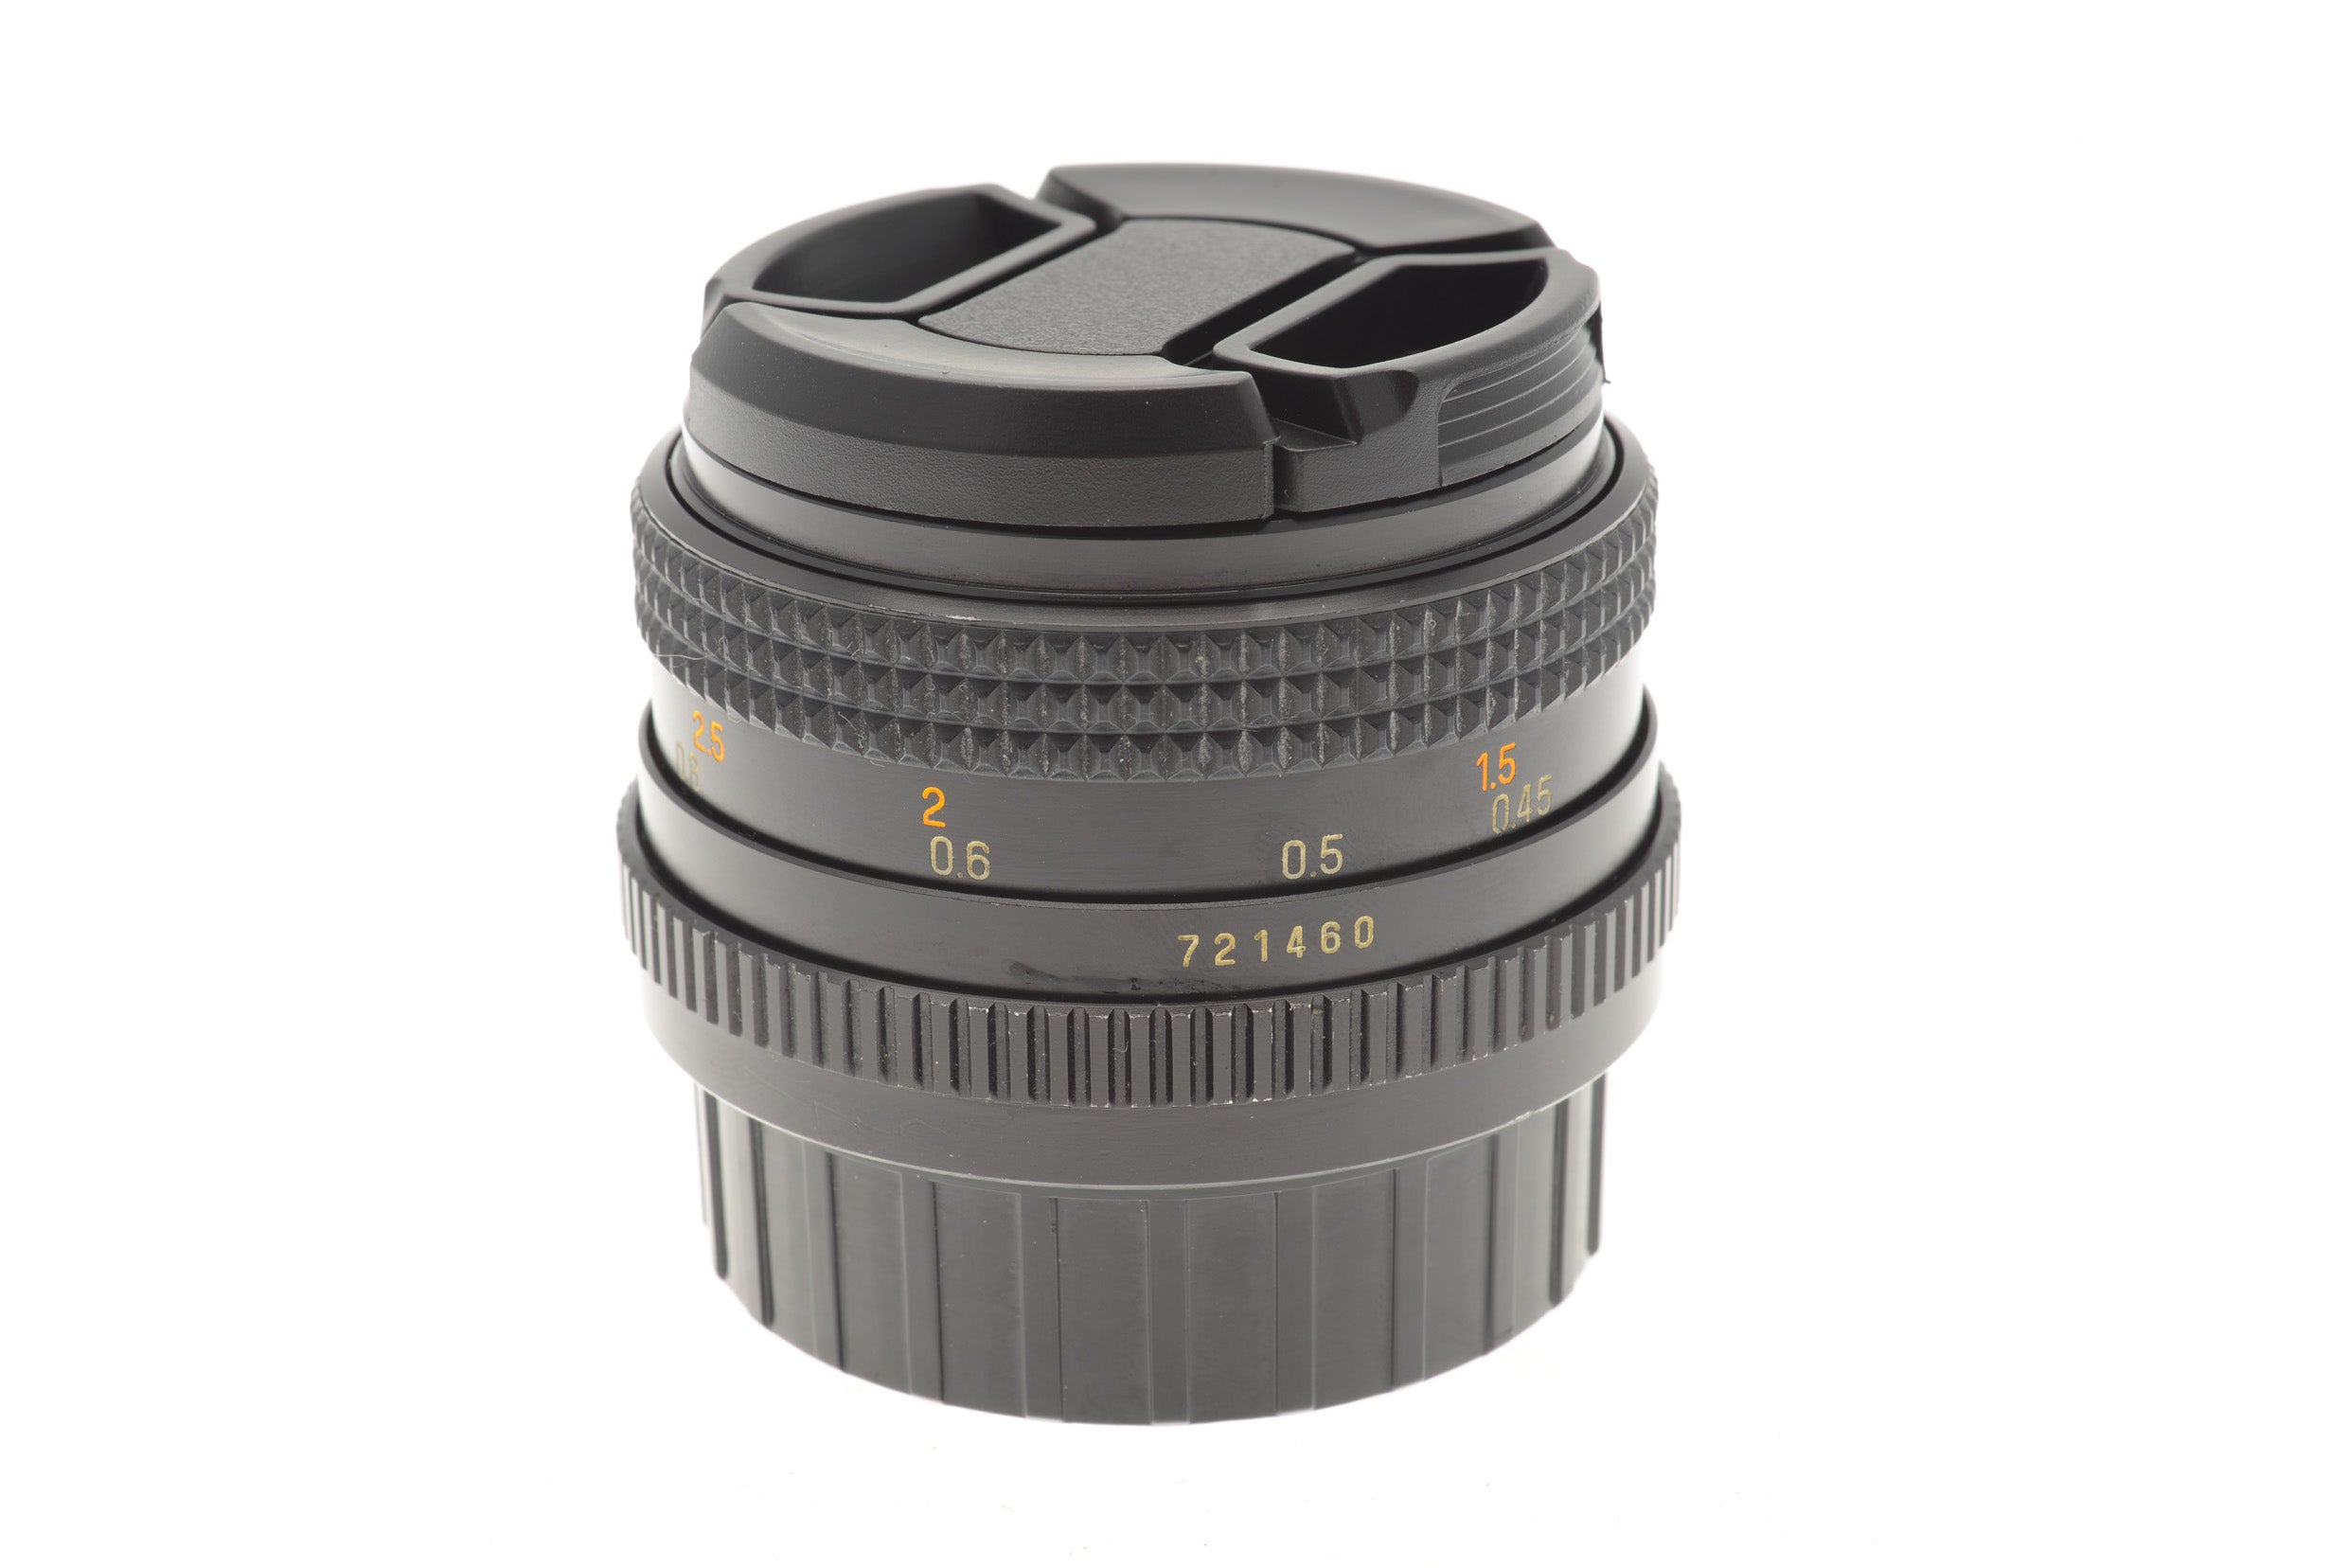 Chinon 50mm f1.9 Auto - Lens